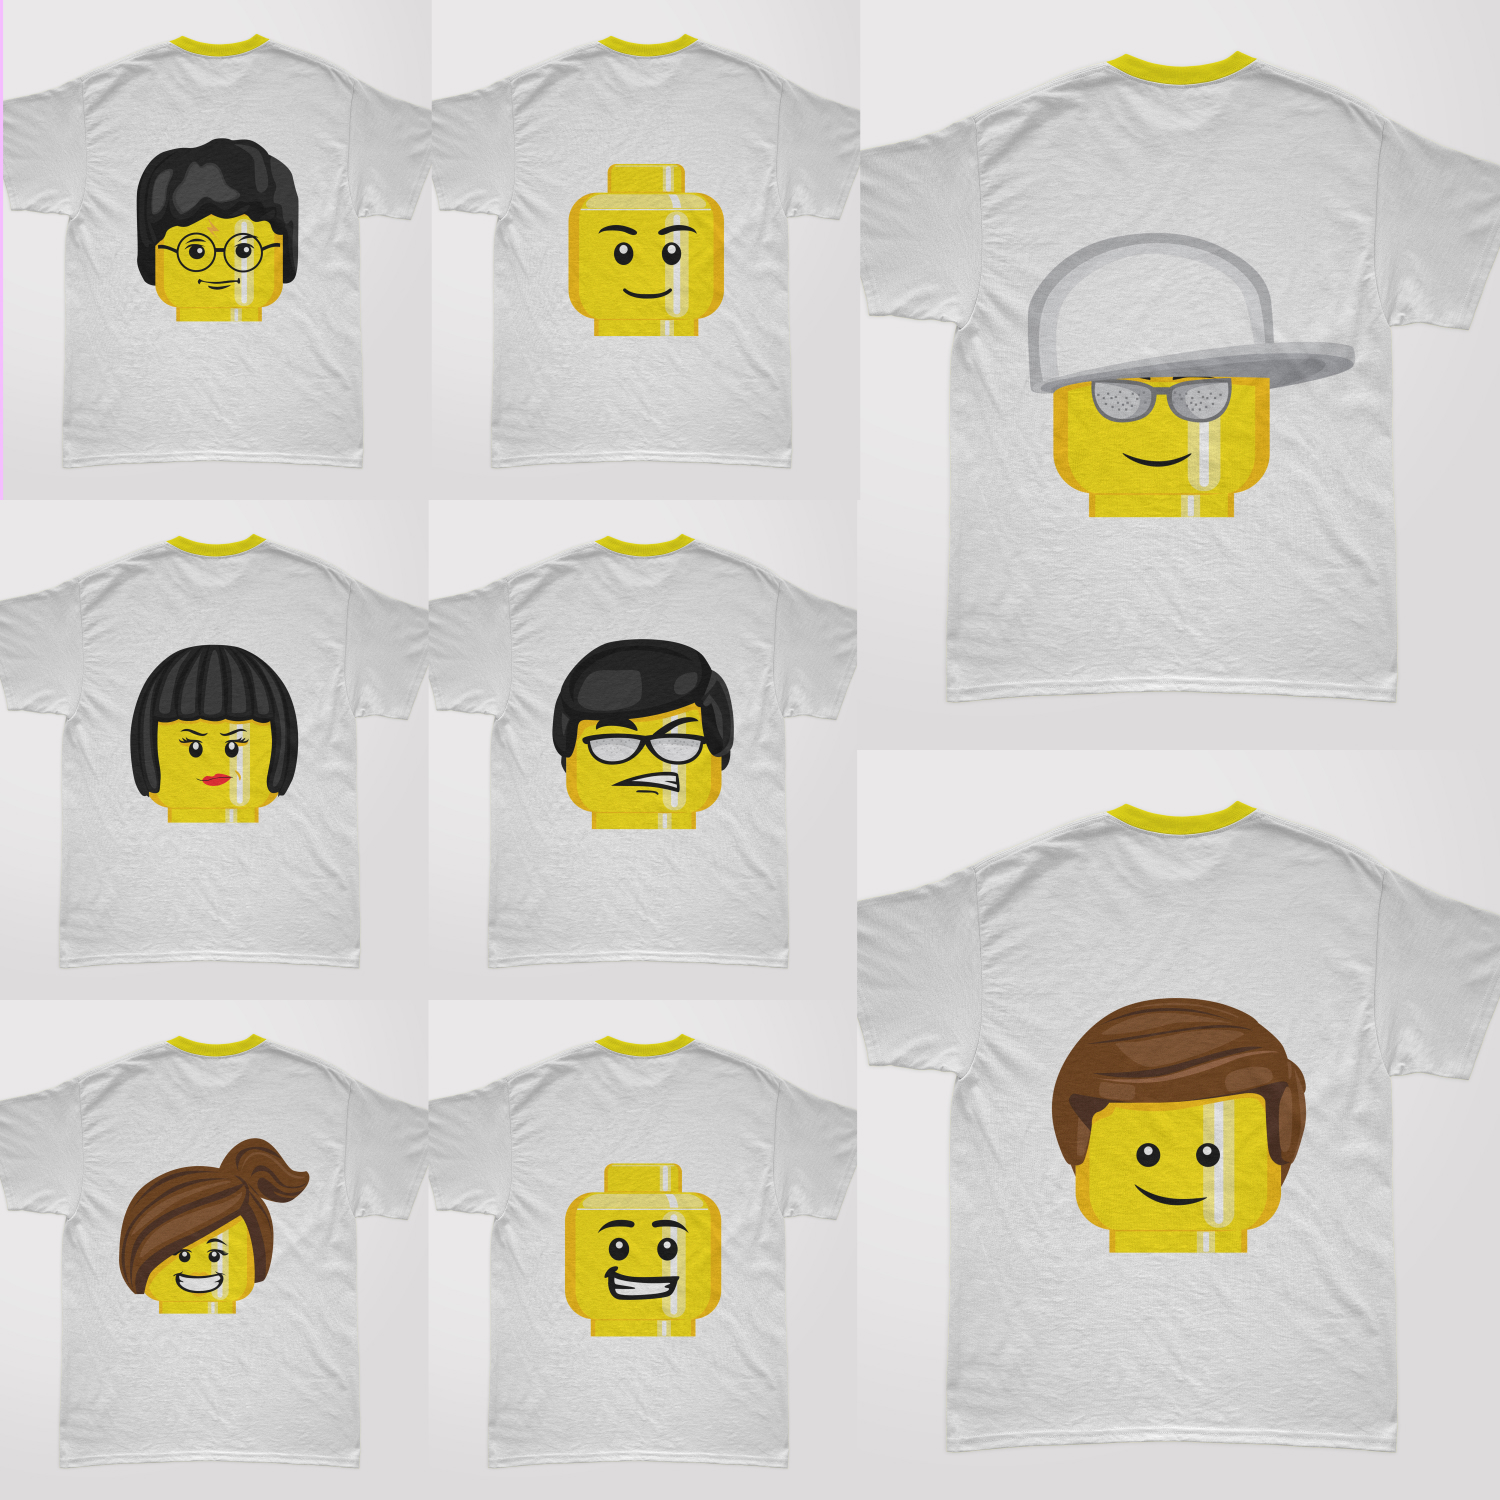 Preview lego head t shirt designs bundle.